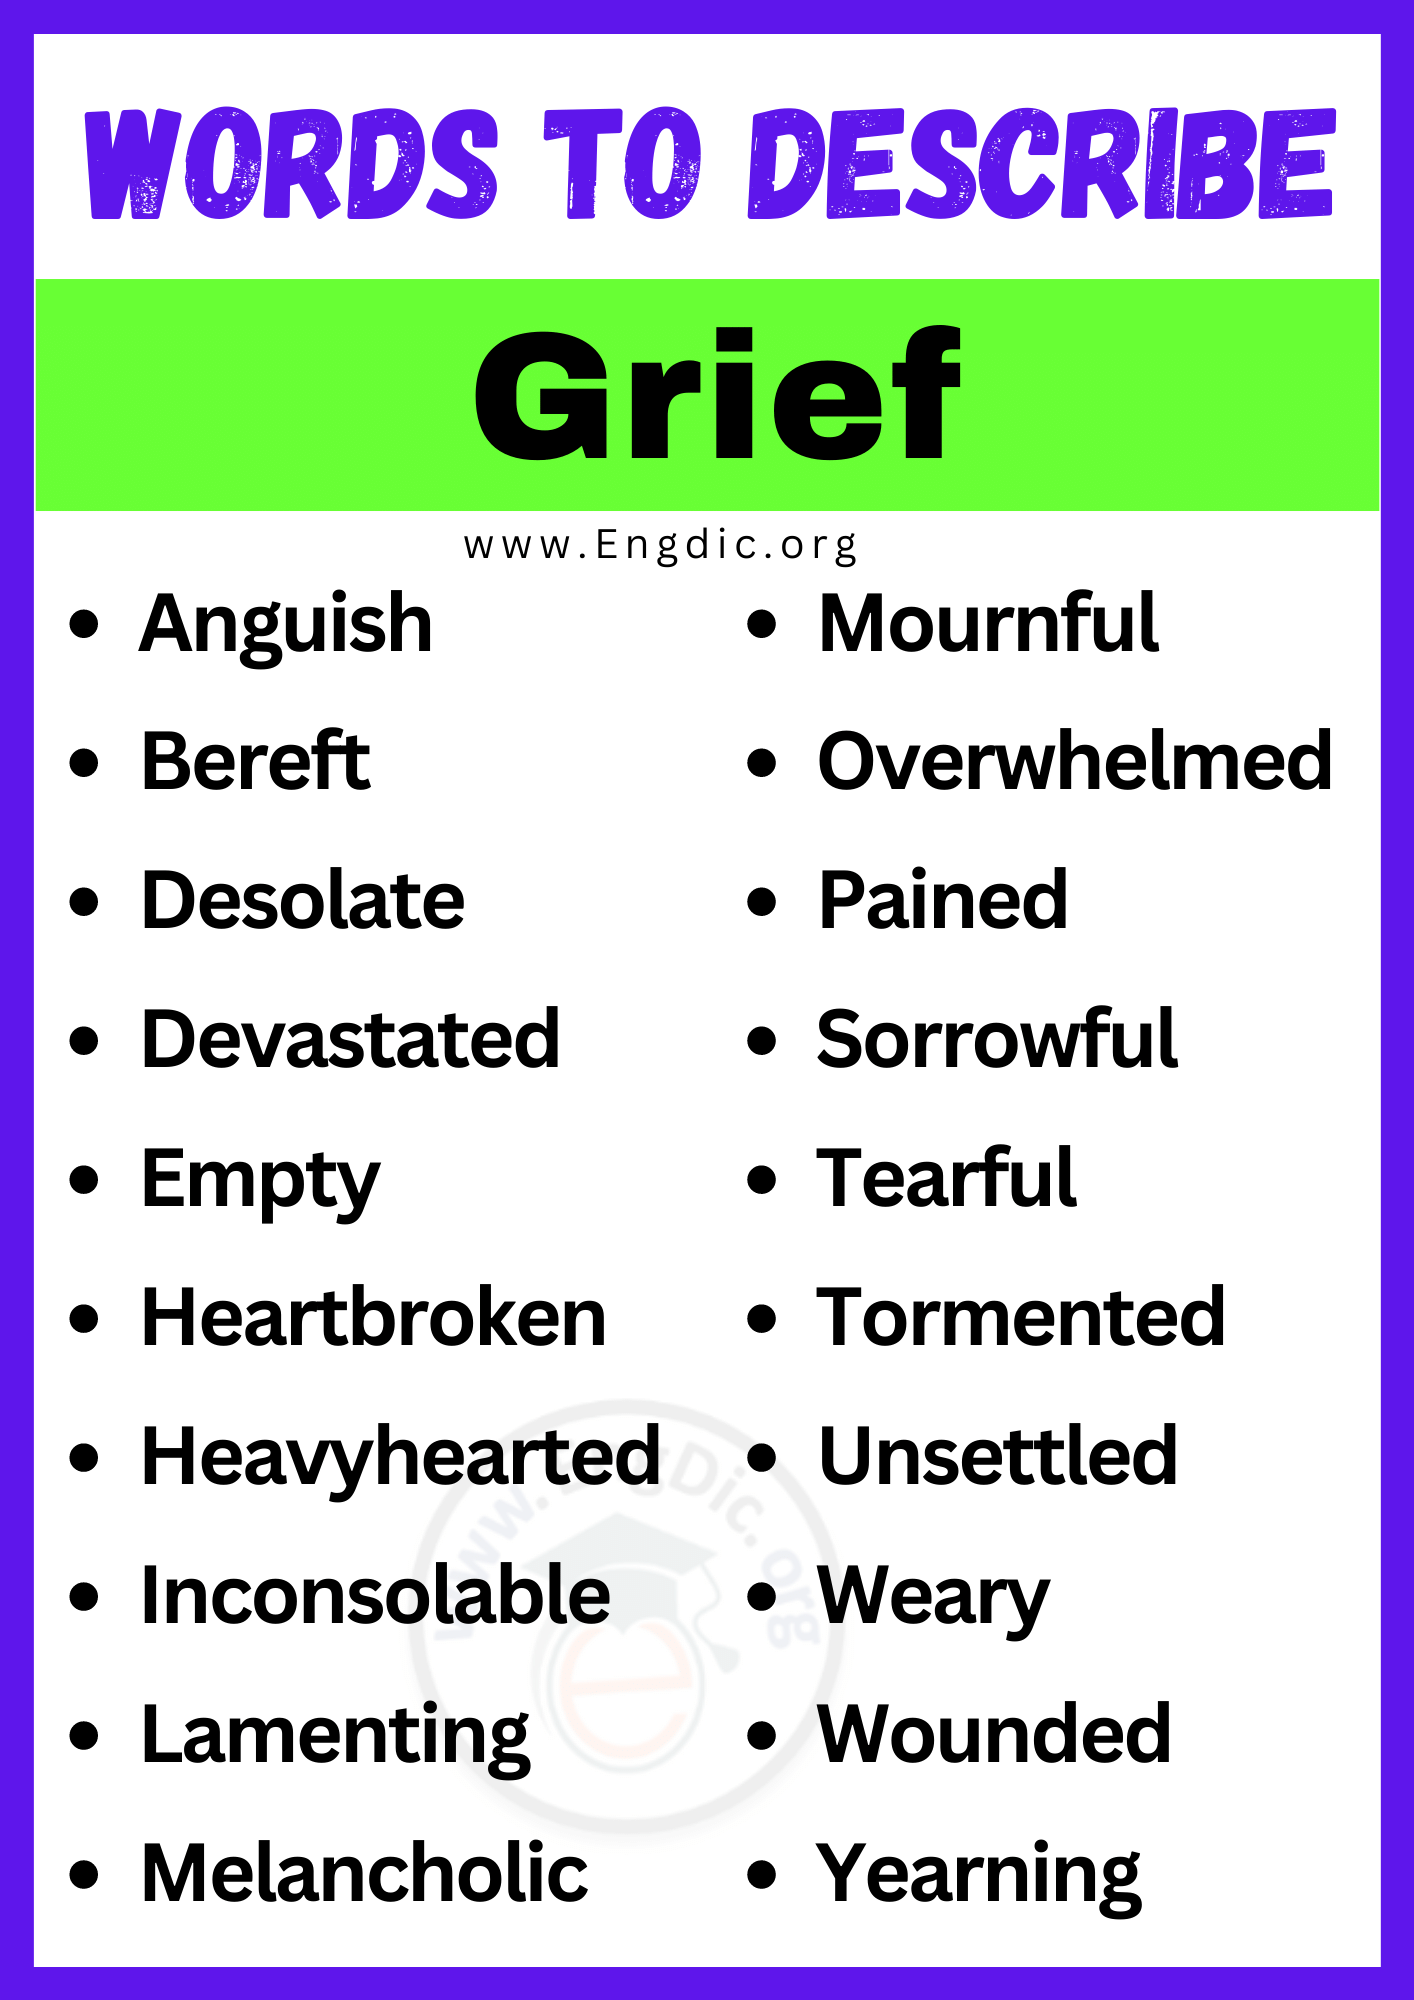 Words to Describe Grief